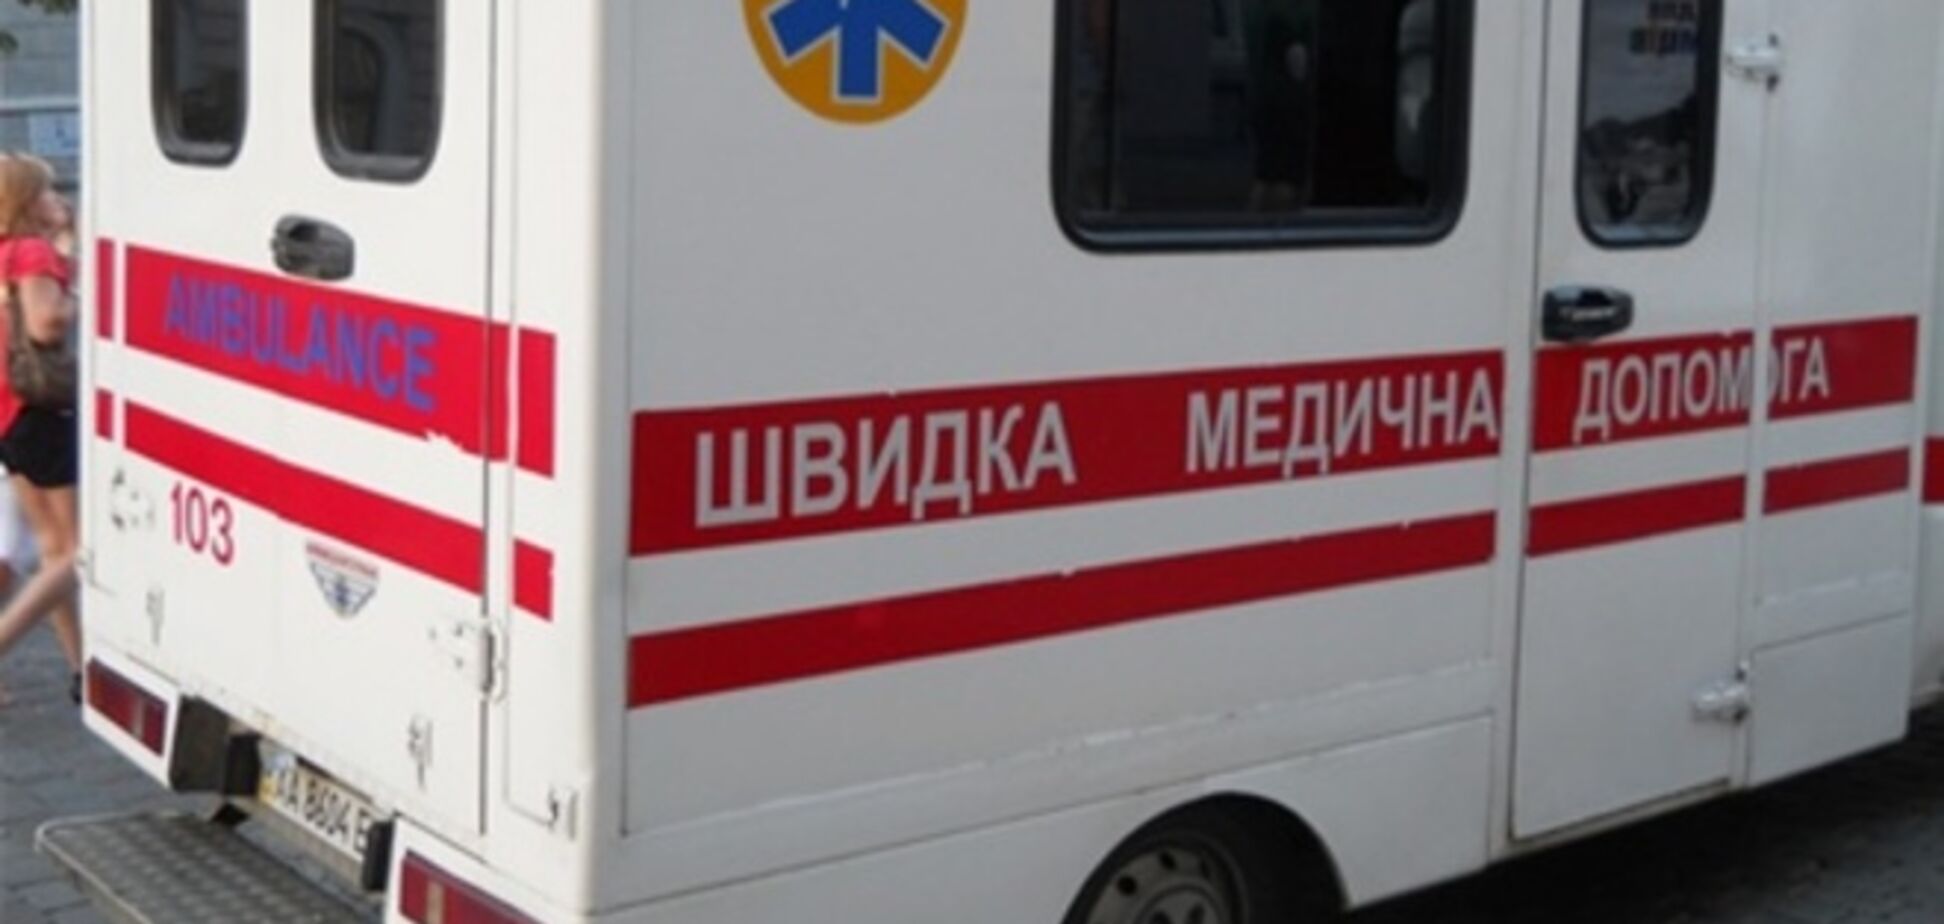 Головлікар макіївської лікарні допомагає 'ДНР' - ЗМІ